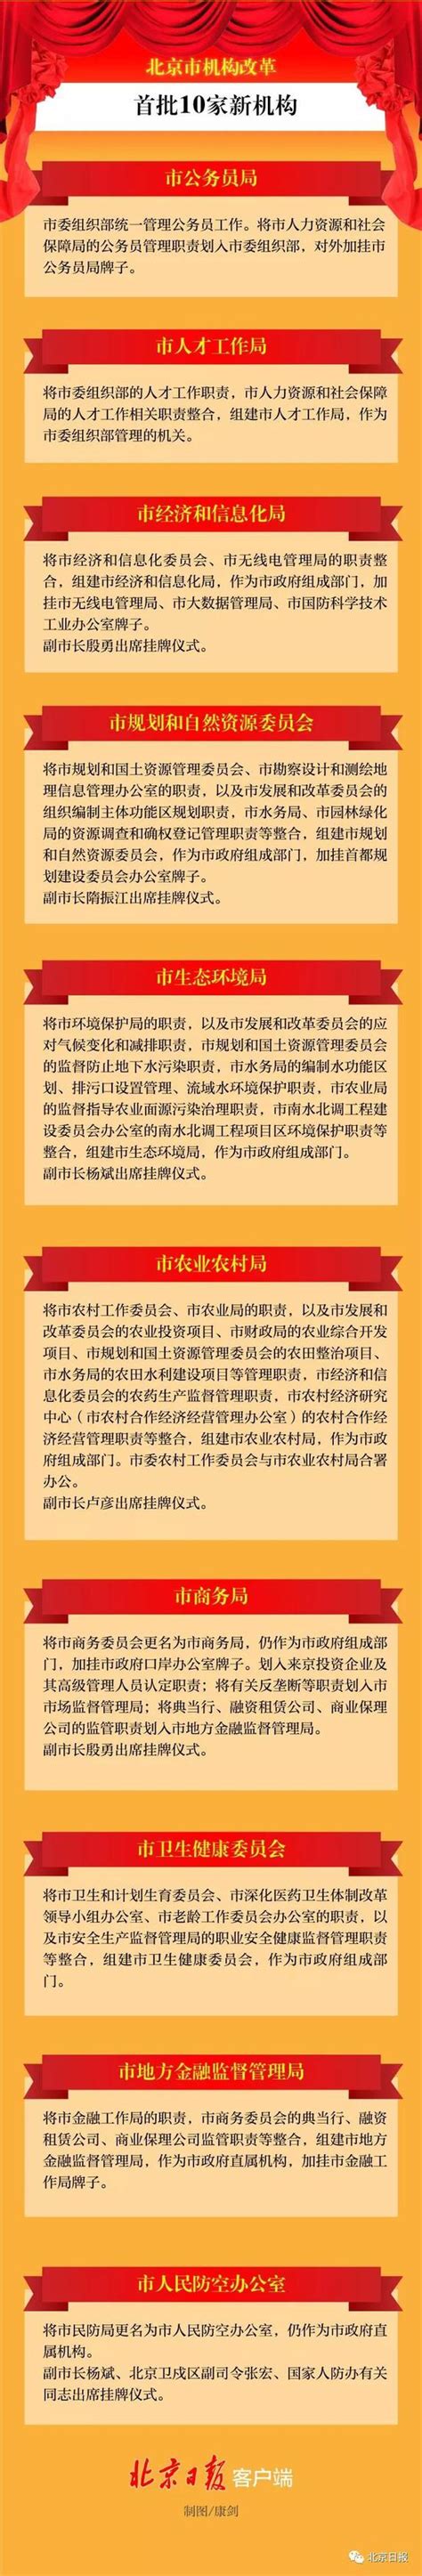 北京市机构改革第二批20家新机构挂牌 一图读懂|机构改革|挂牌|北京市_新浪新闻